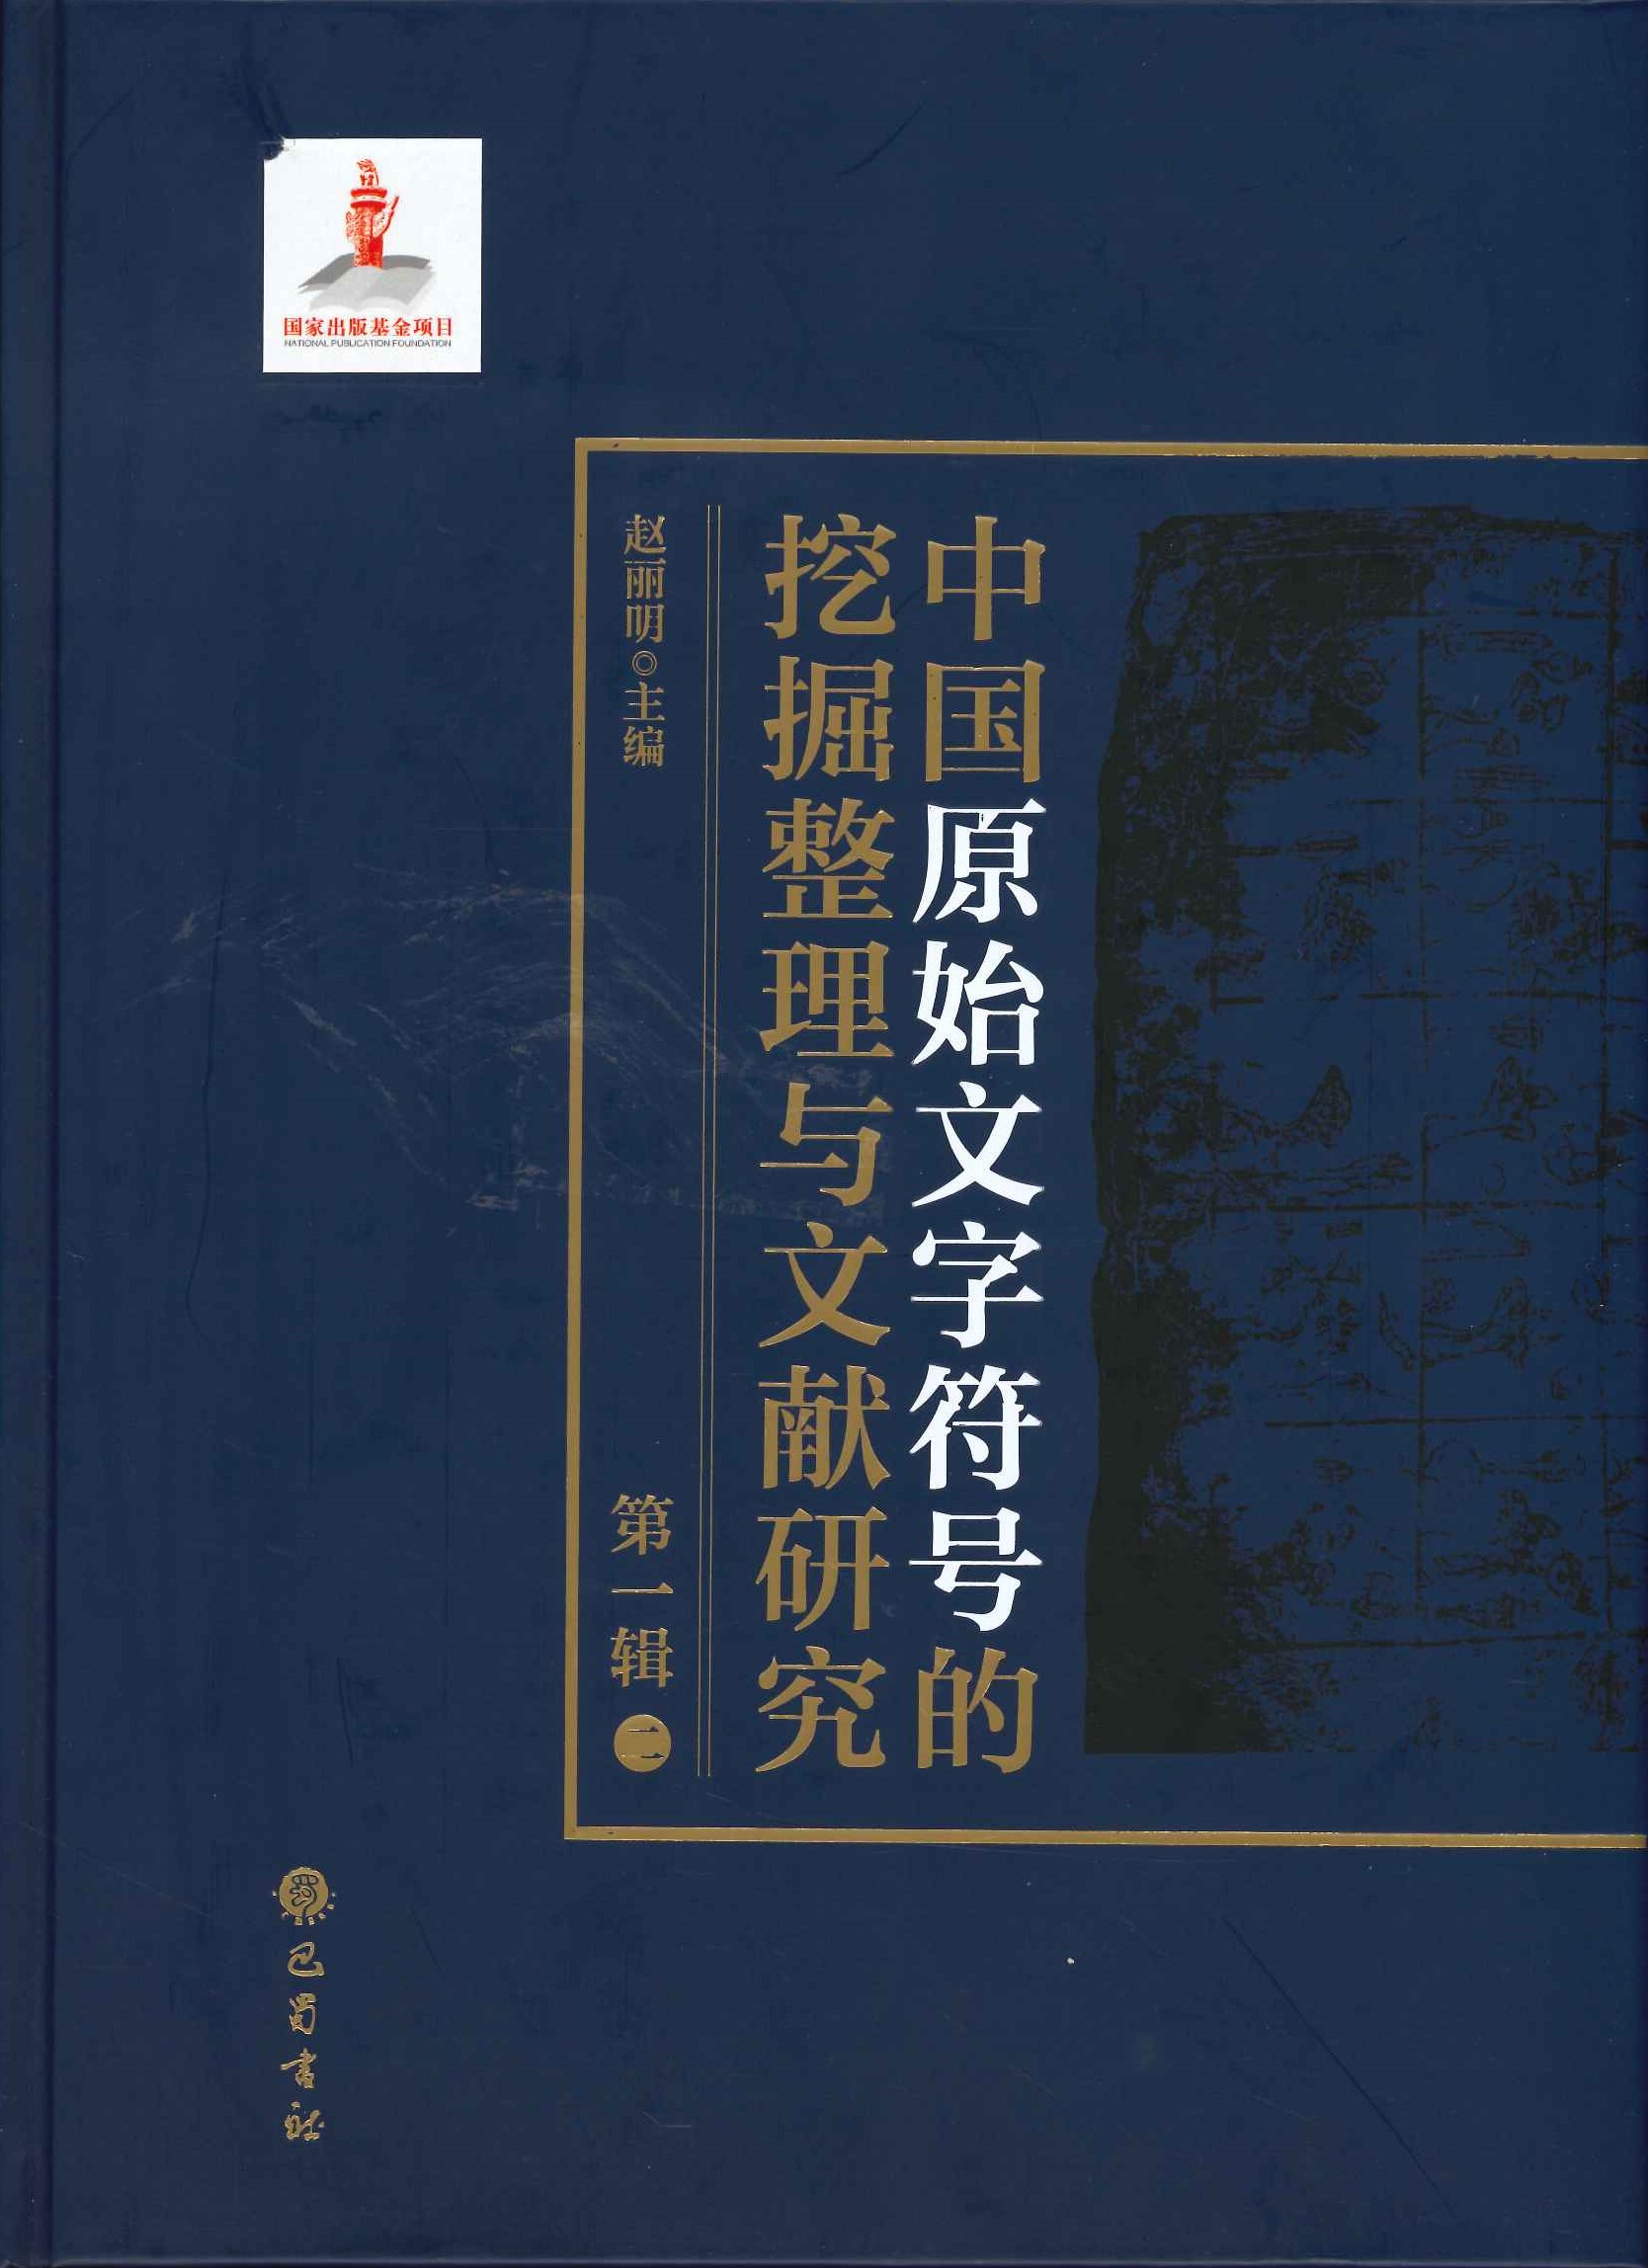 中国原始文字符号的挖掘整理与文献研究第1辑(全8)